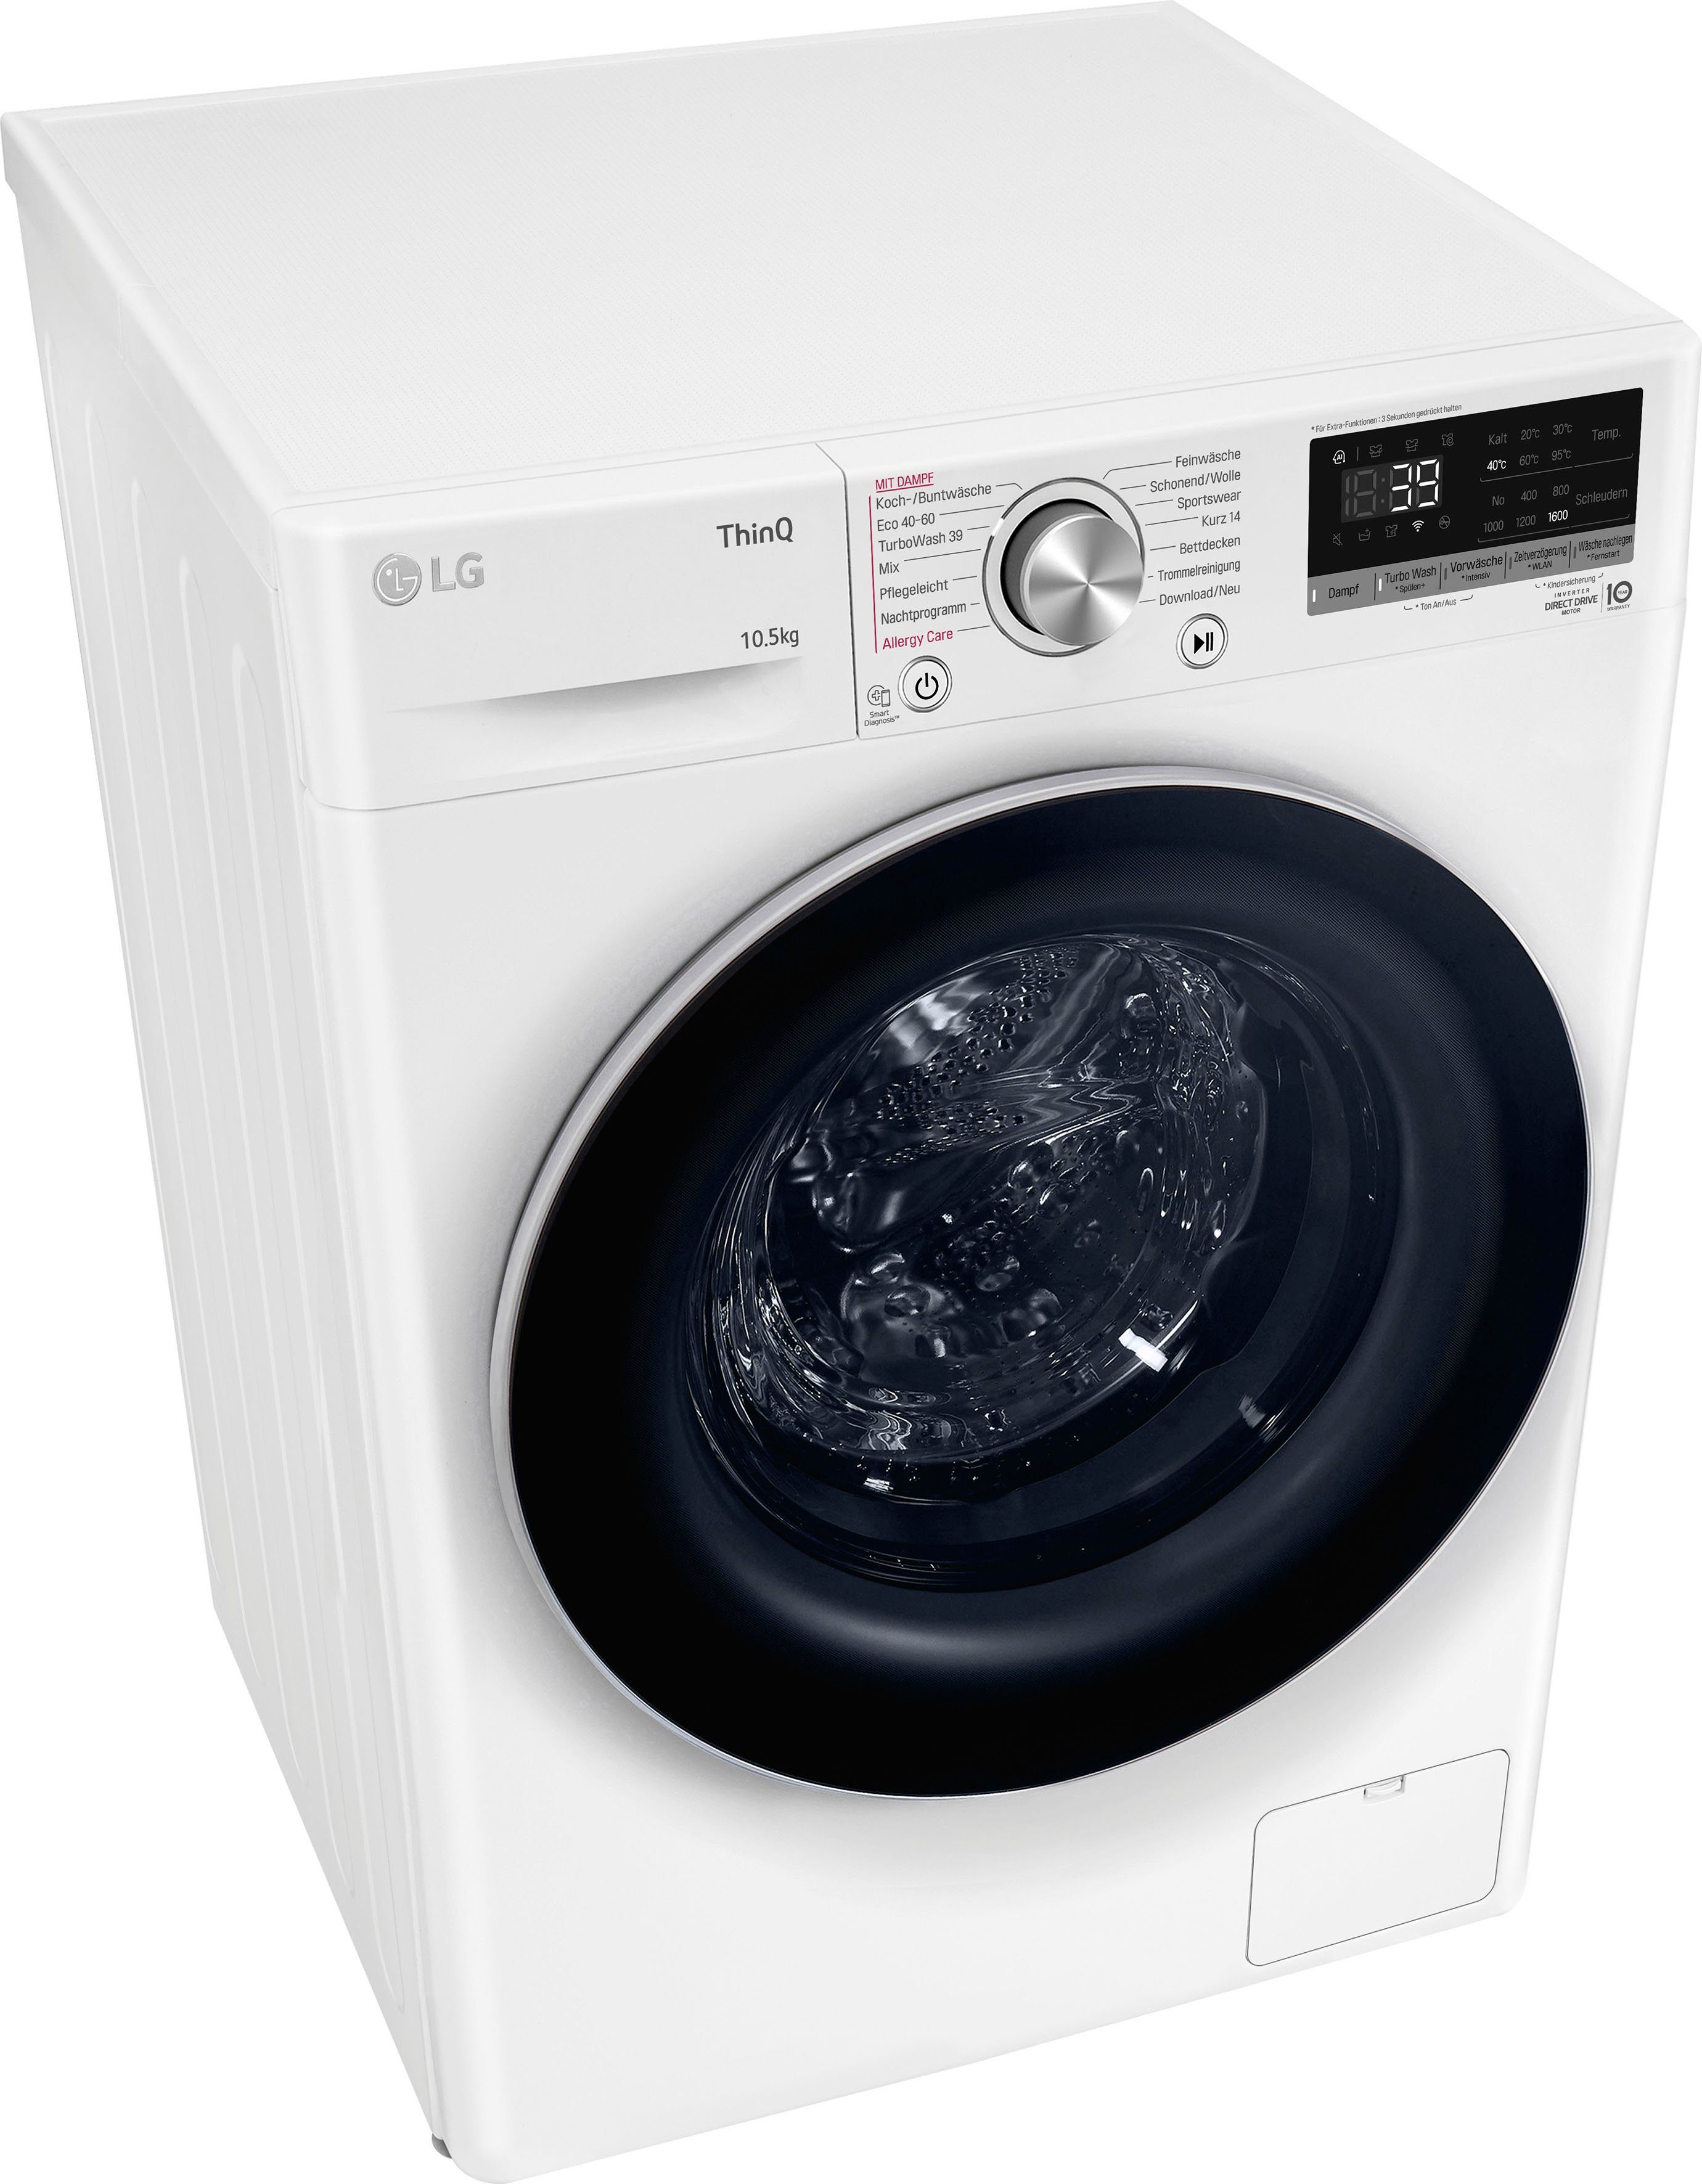 LG Waschmaschine F6WV710P1, 10,5 kg, U/min, in Waschen 39 Minuten 1600 nur TurboWash® 